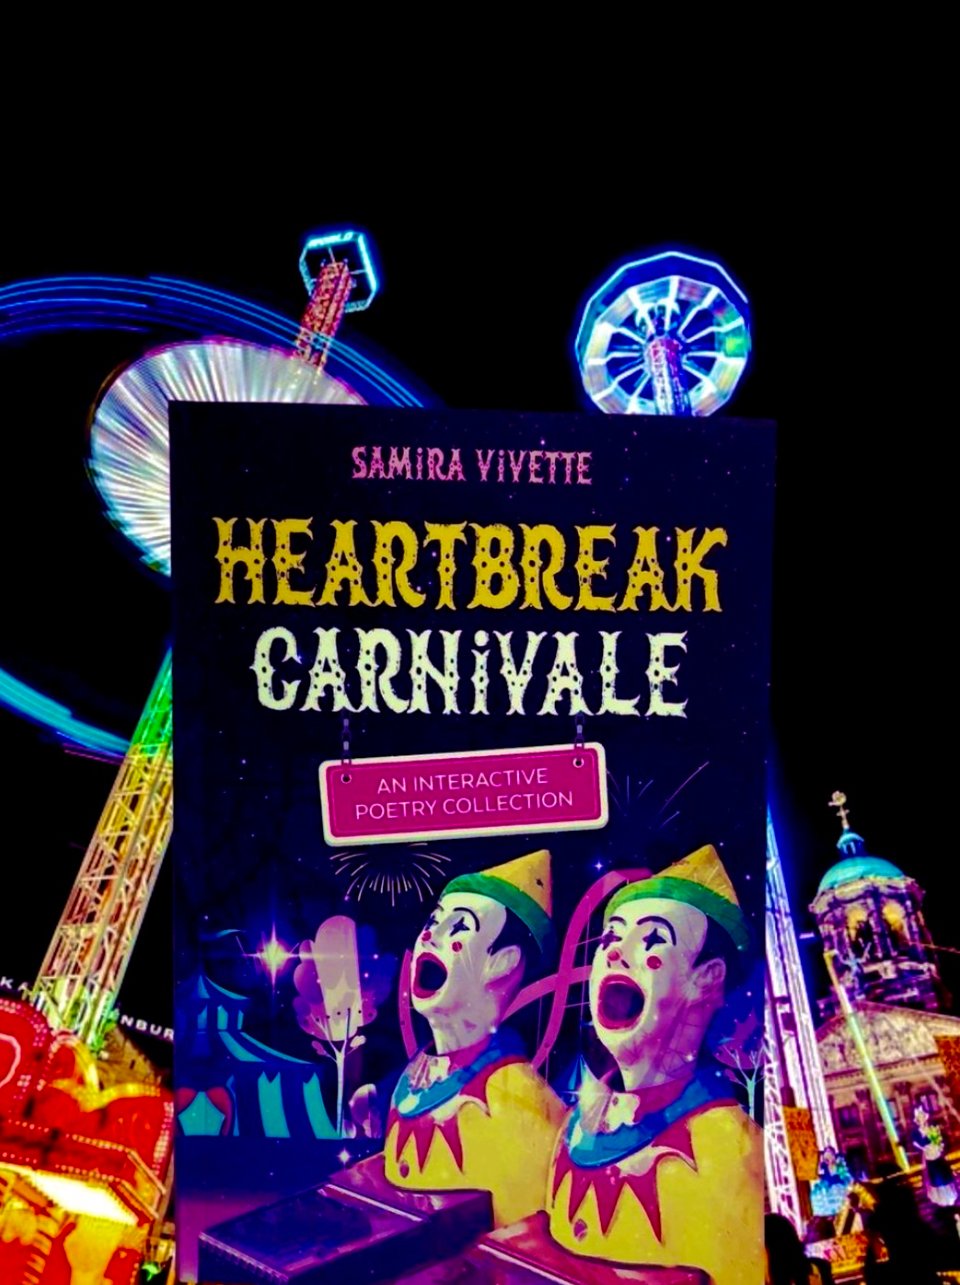 "Heartbreak Carnivale" Signed Copy